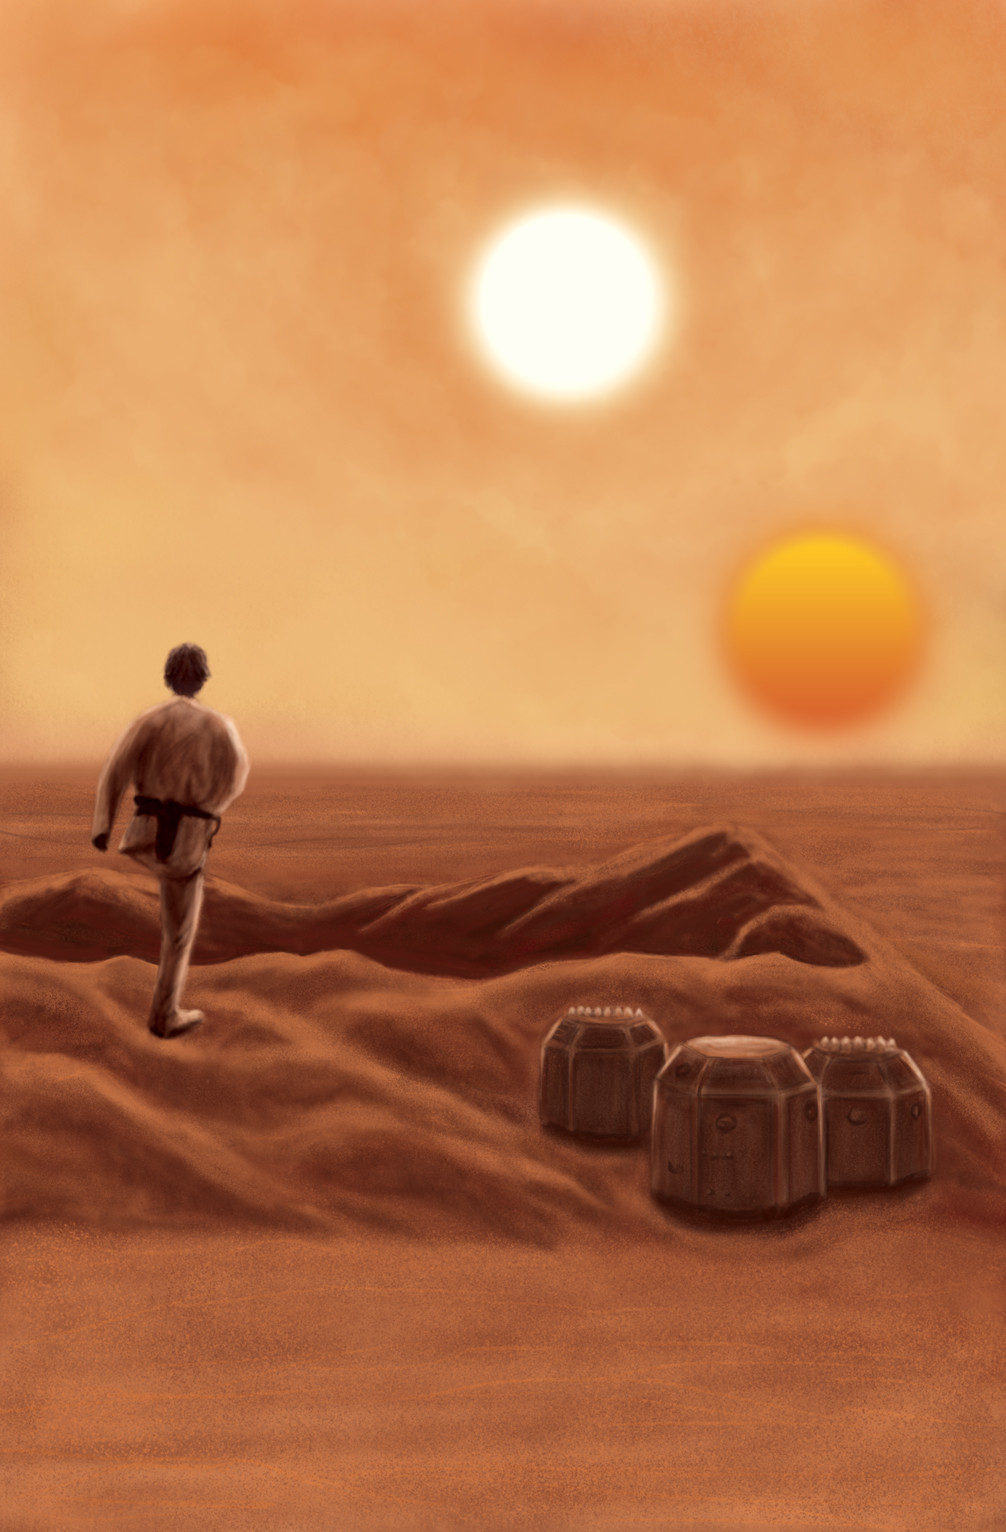 Star Wars landscape on Tatooine. 